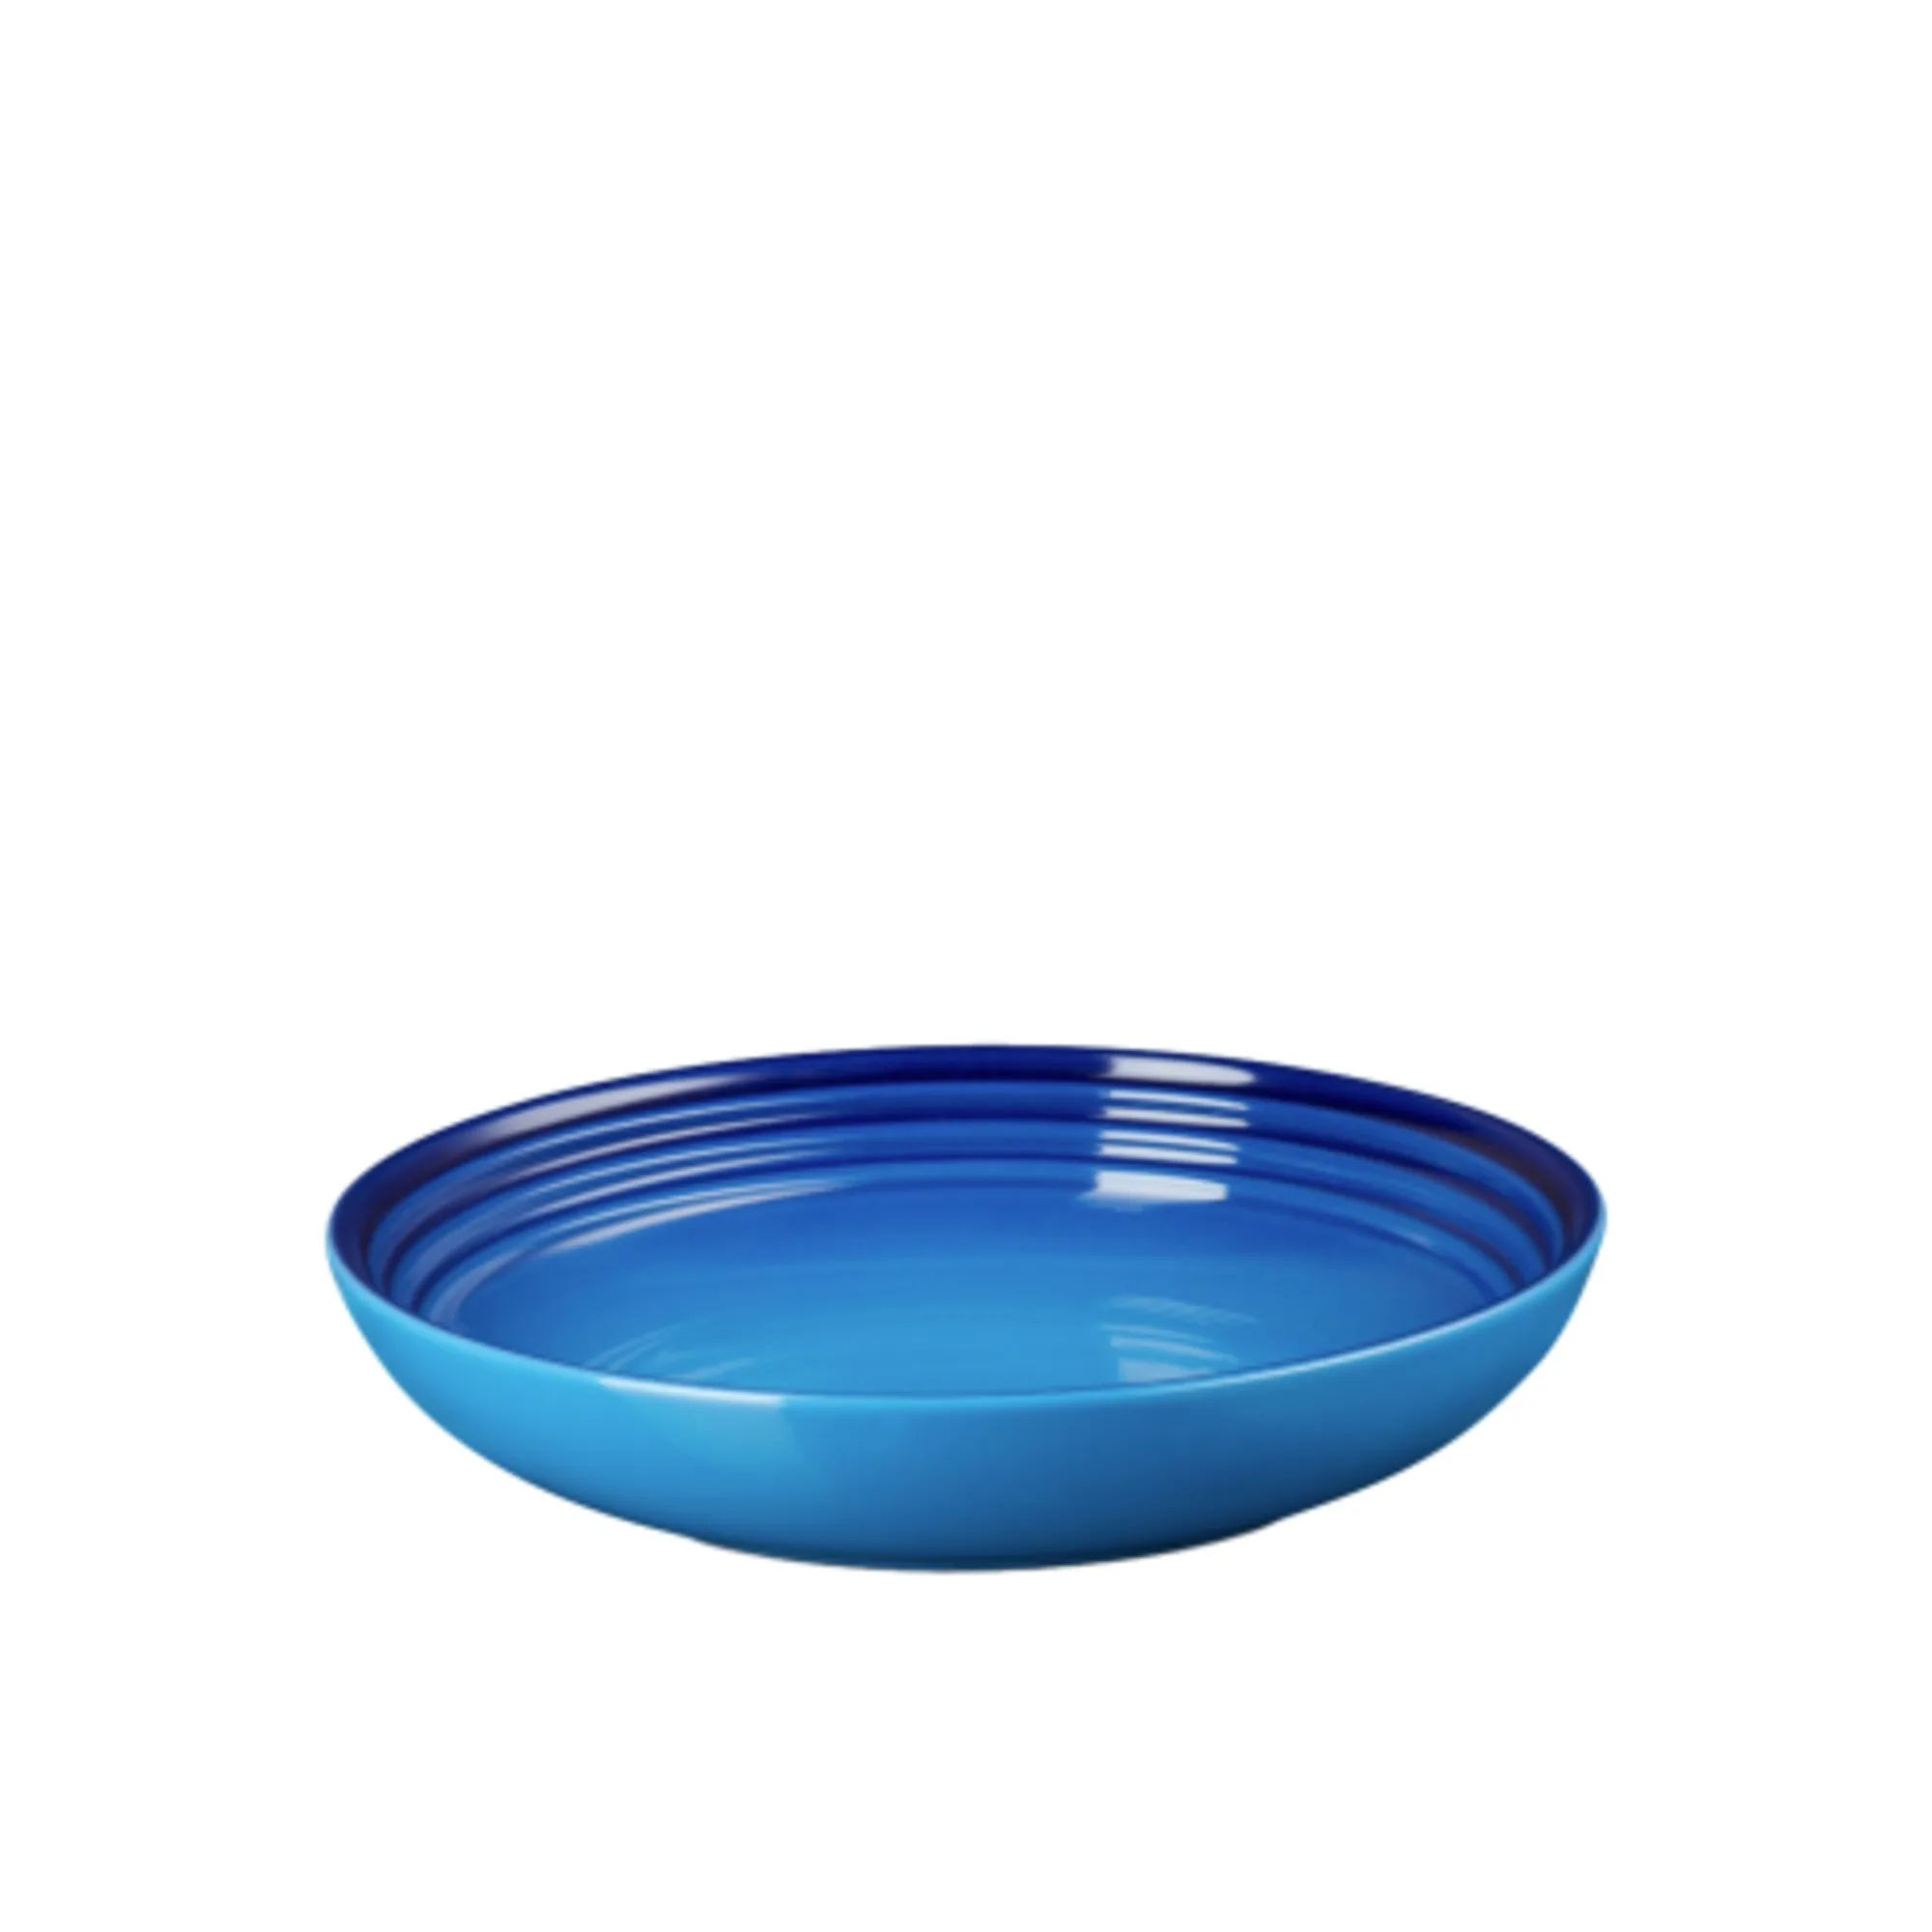 Le Creuset Stoneware Pasta Bowl 22cm Azure Blue Image 1